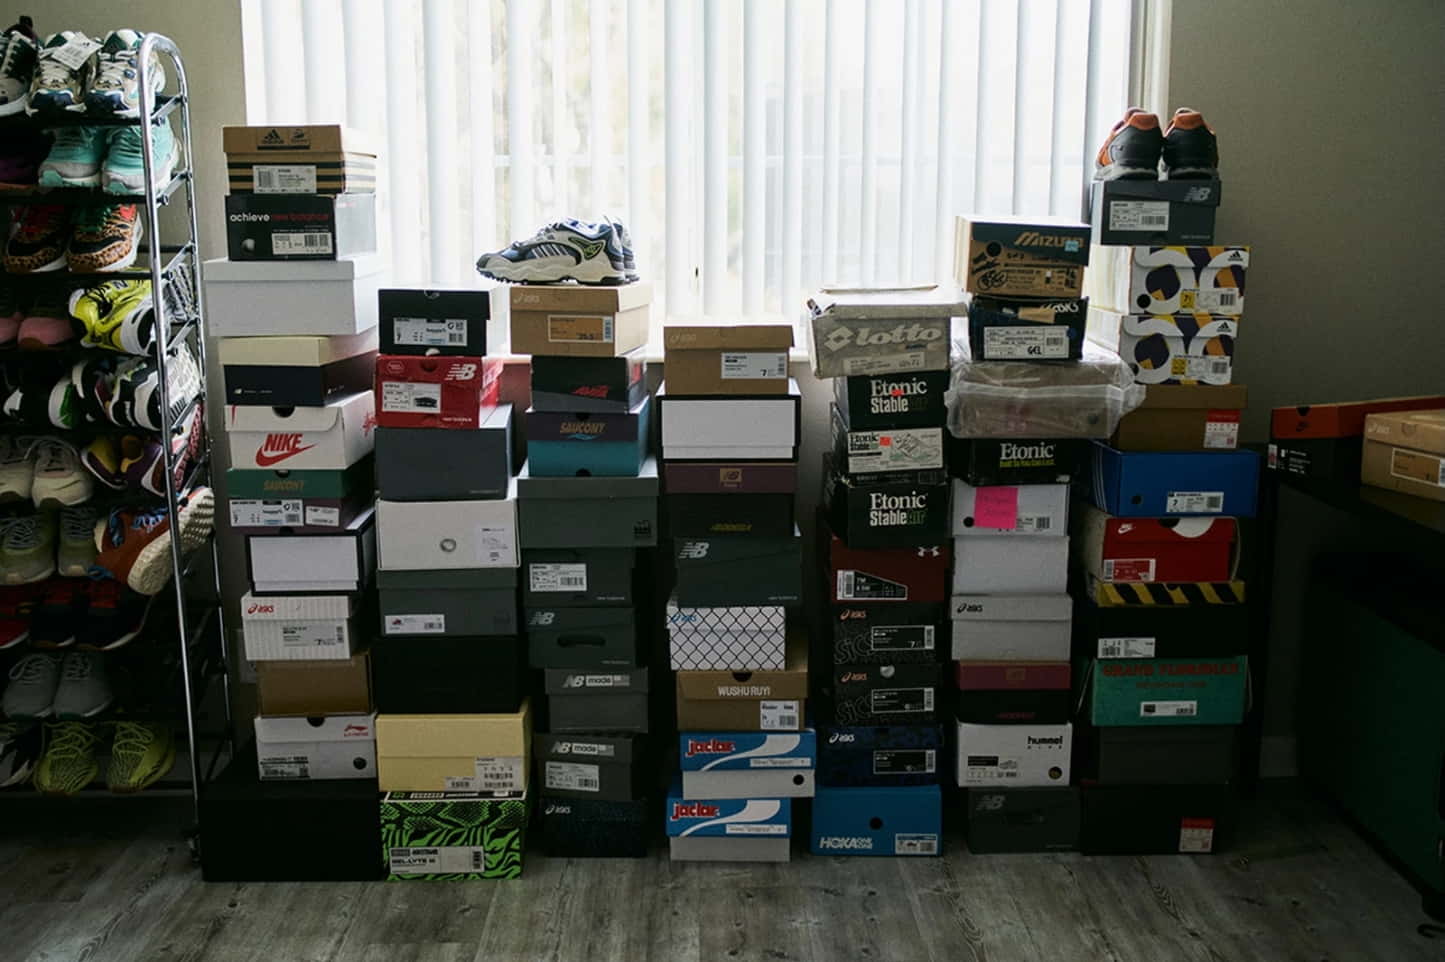 Stefano Gulotta iz Obscure Sneakers daet samye tsennye sovety po pokupke krossovok na eBay 6